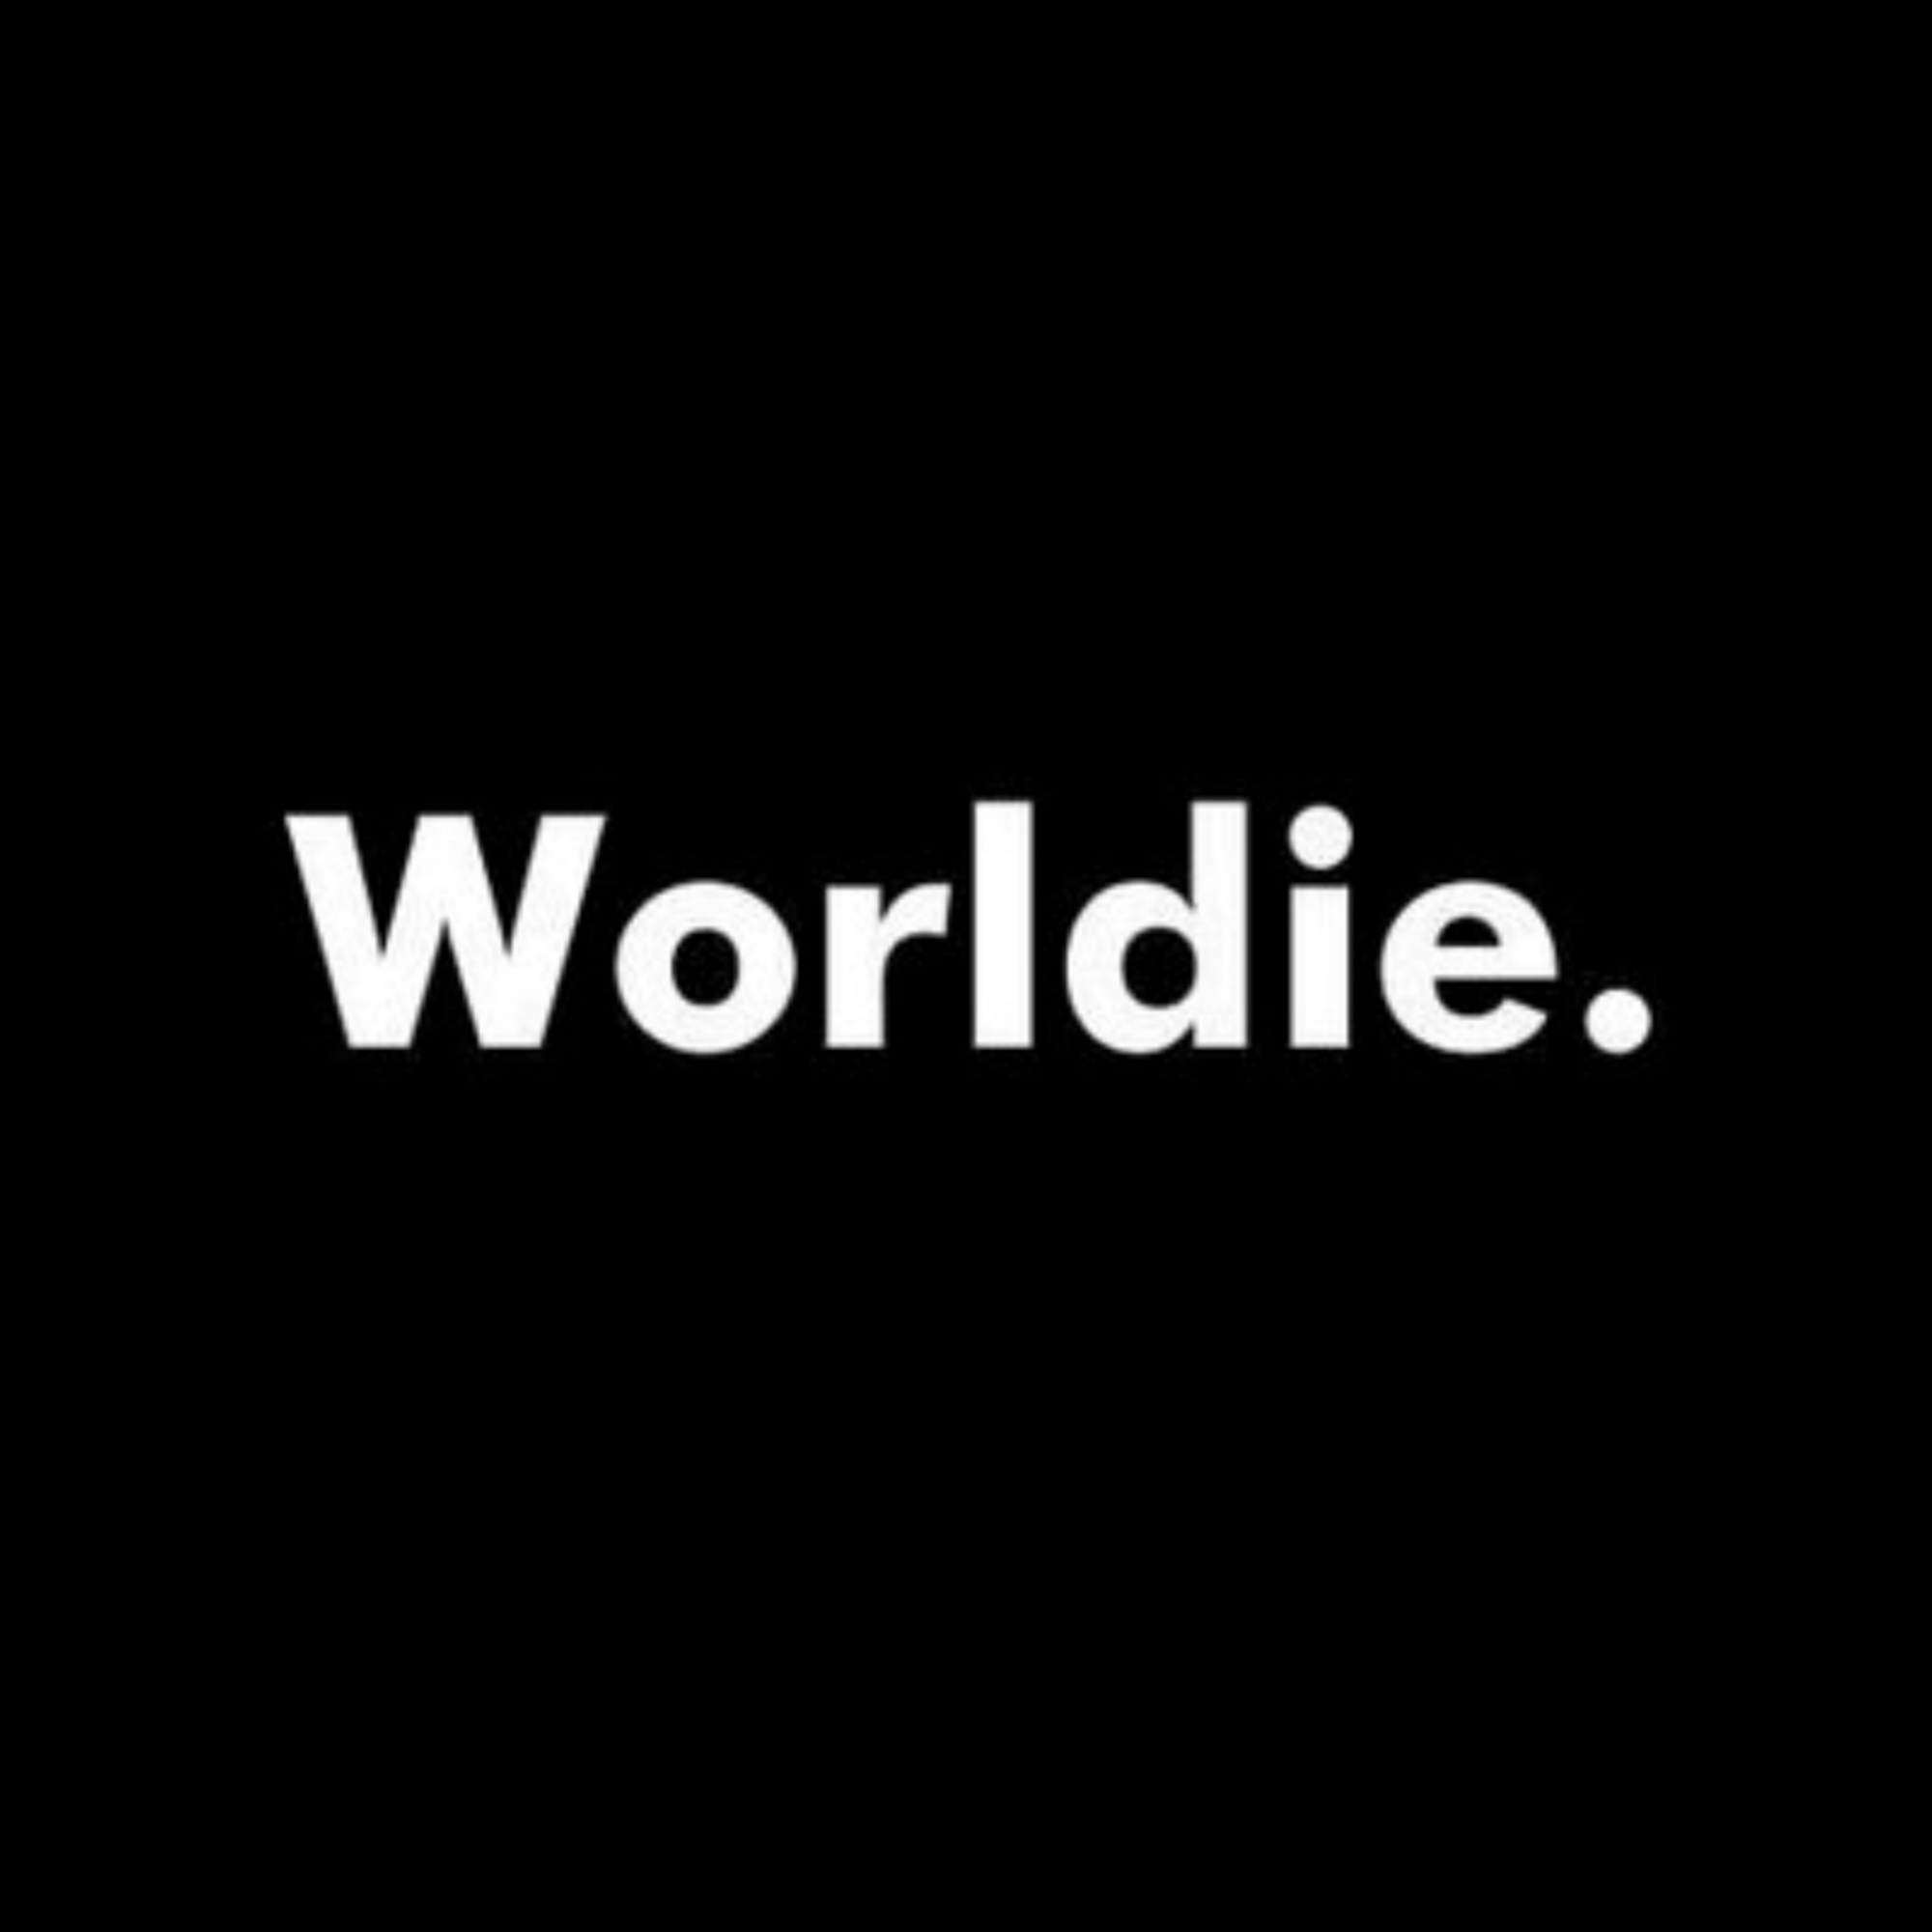 Absolute Worldie Episode 11 - 